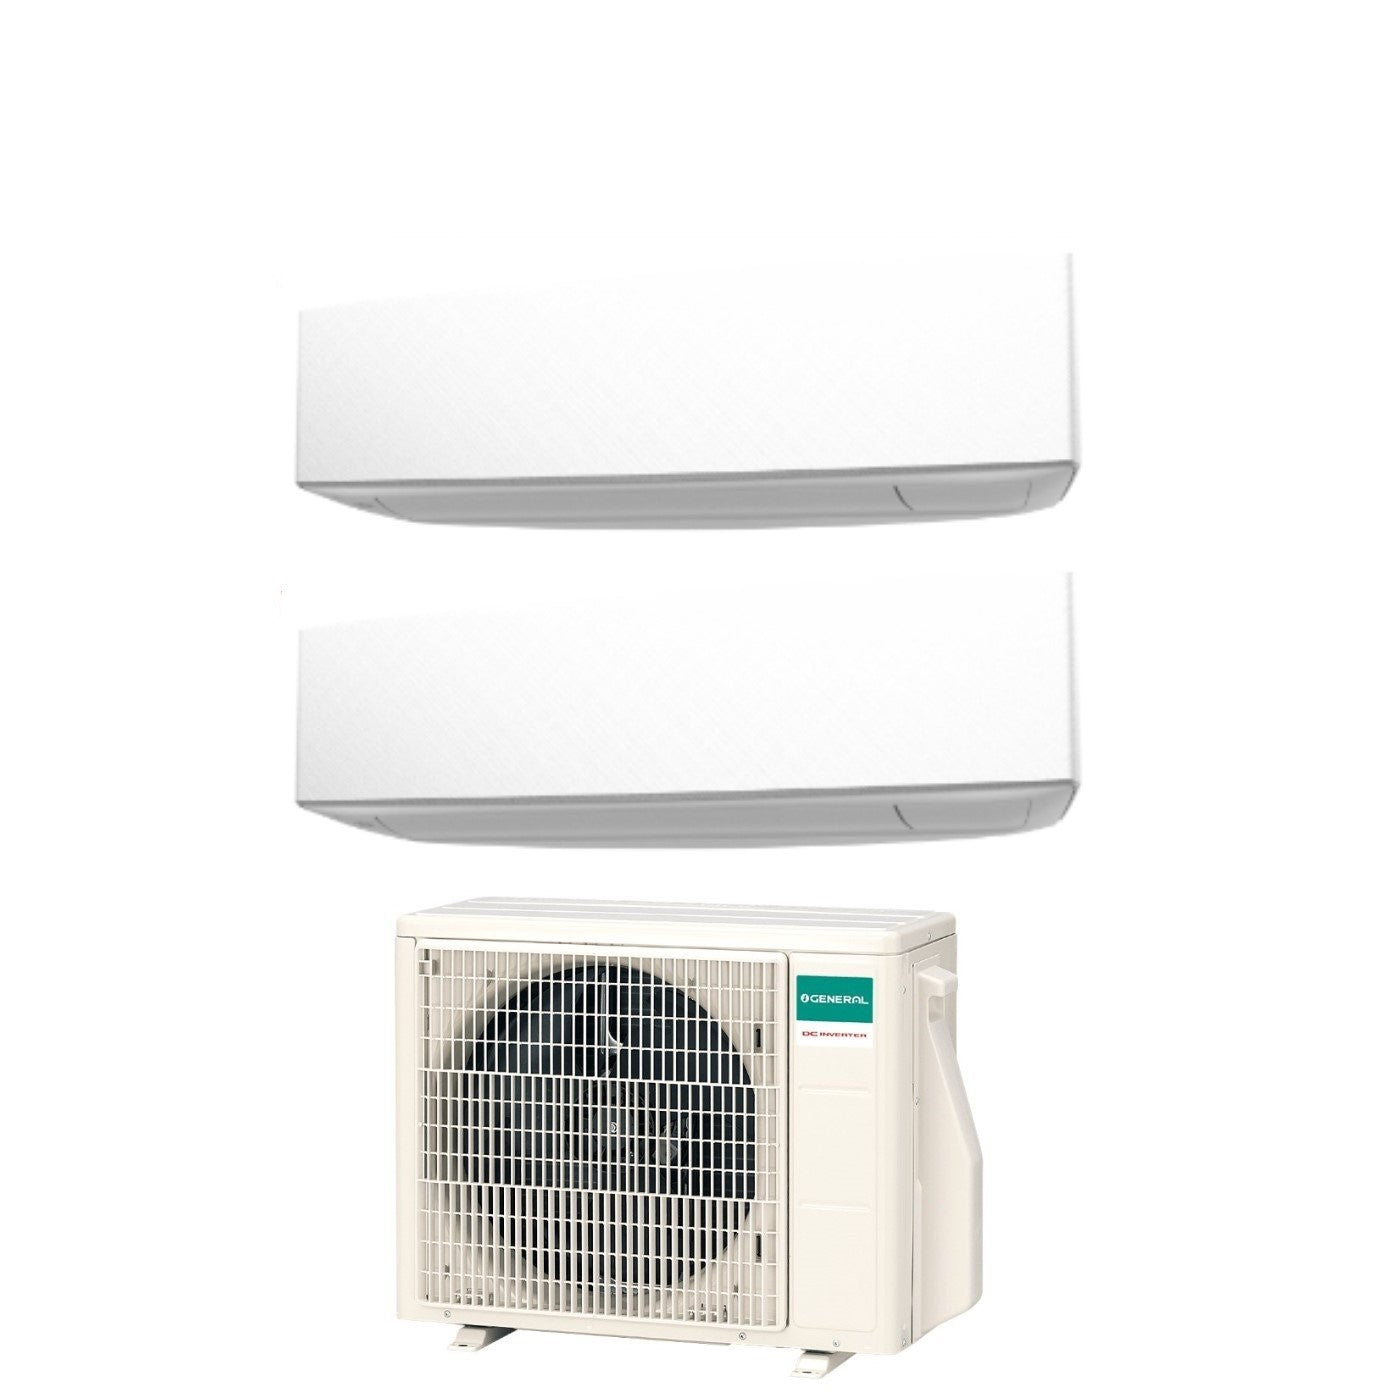 Climatizzatore Condizionatore General Fujitsu Dual Split Inverter serie KETA WHITE 9+12 con AOHG18KBTA2 R-32 Wi-Fi Optional 9000+12000 Colore Bianco - Novità